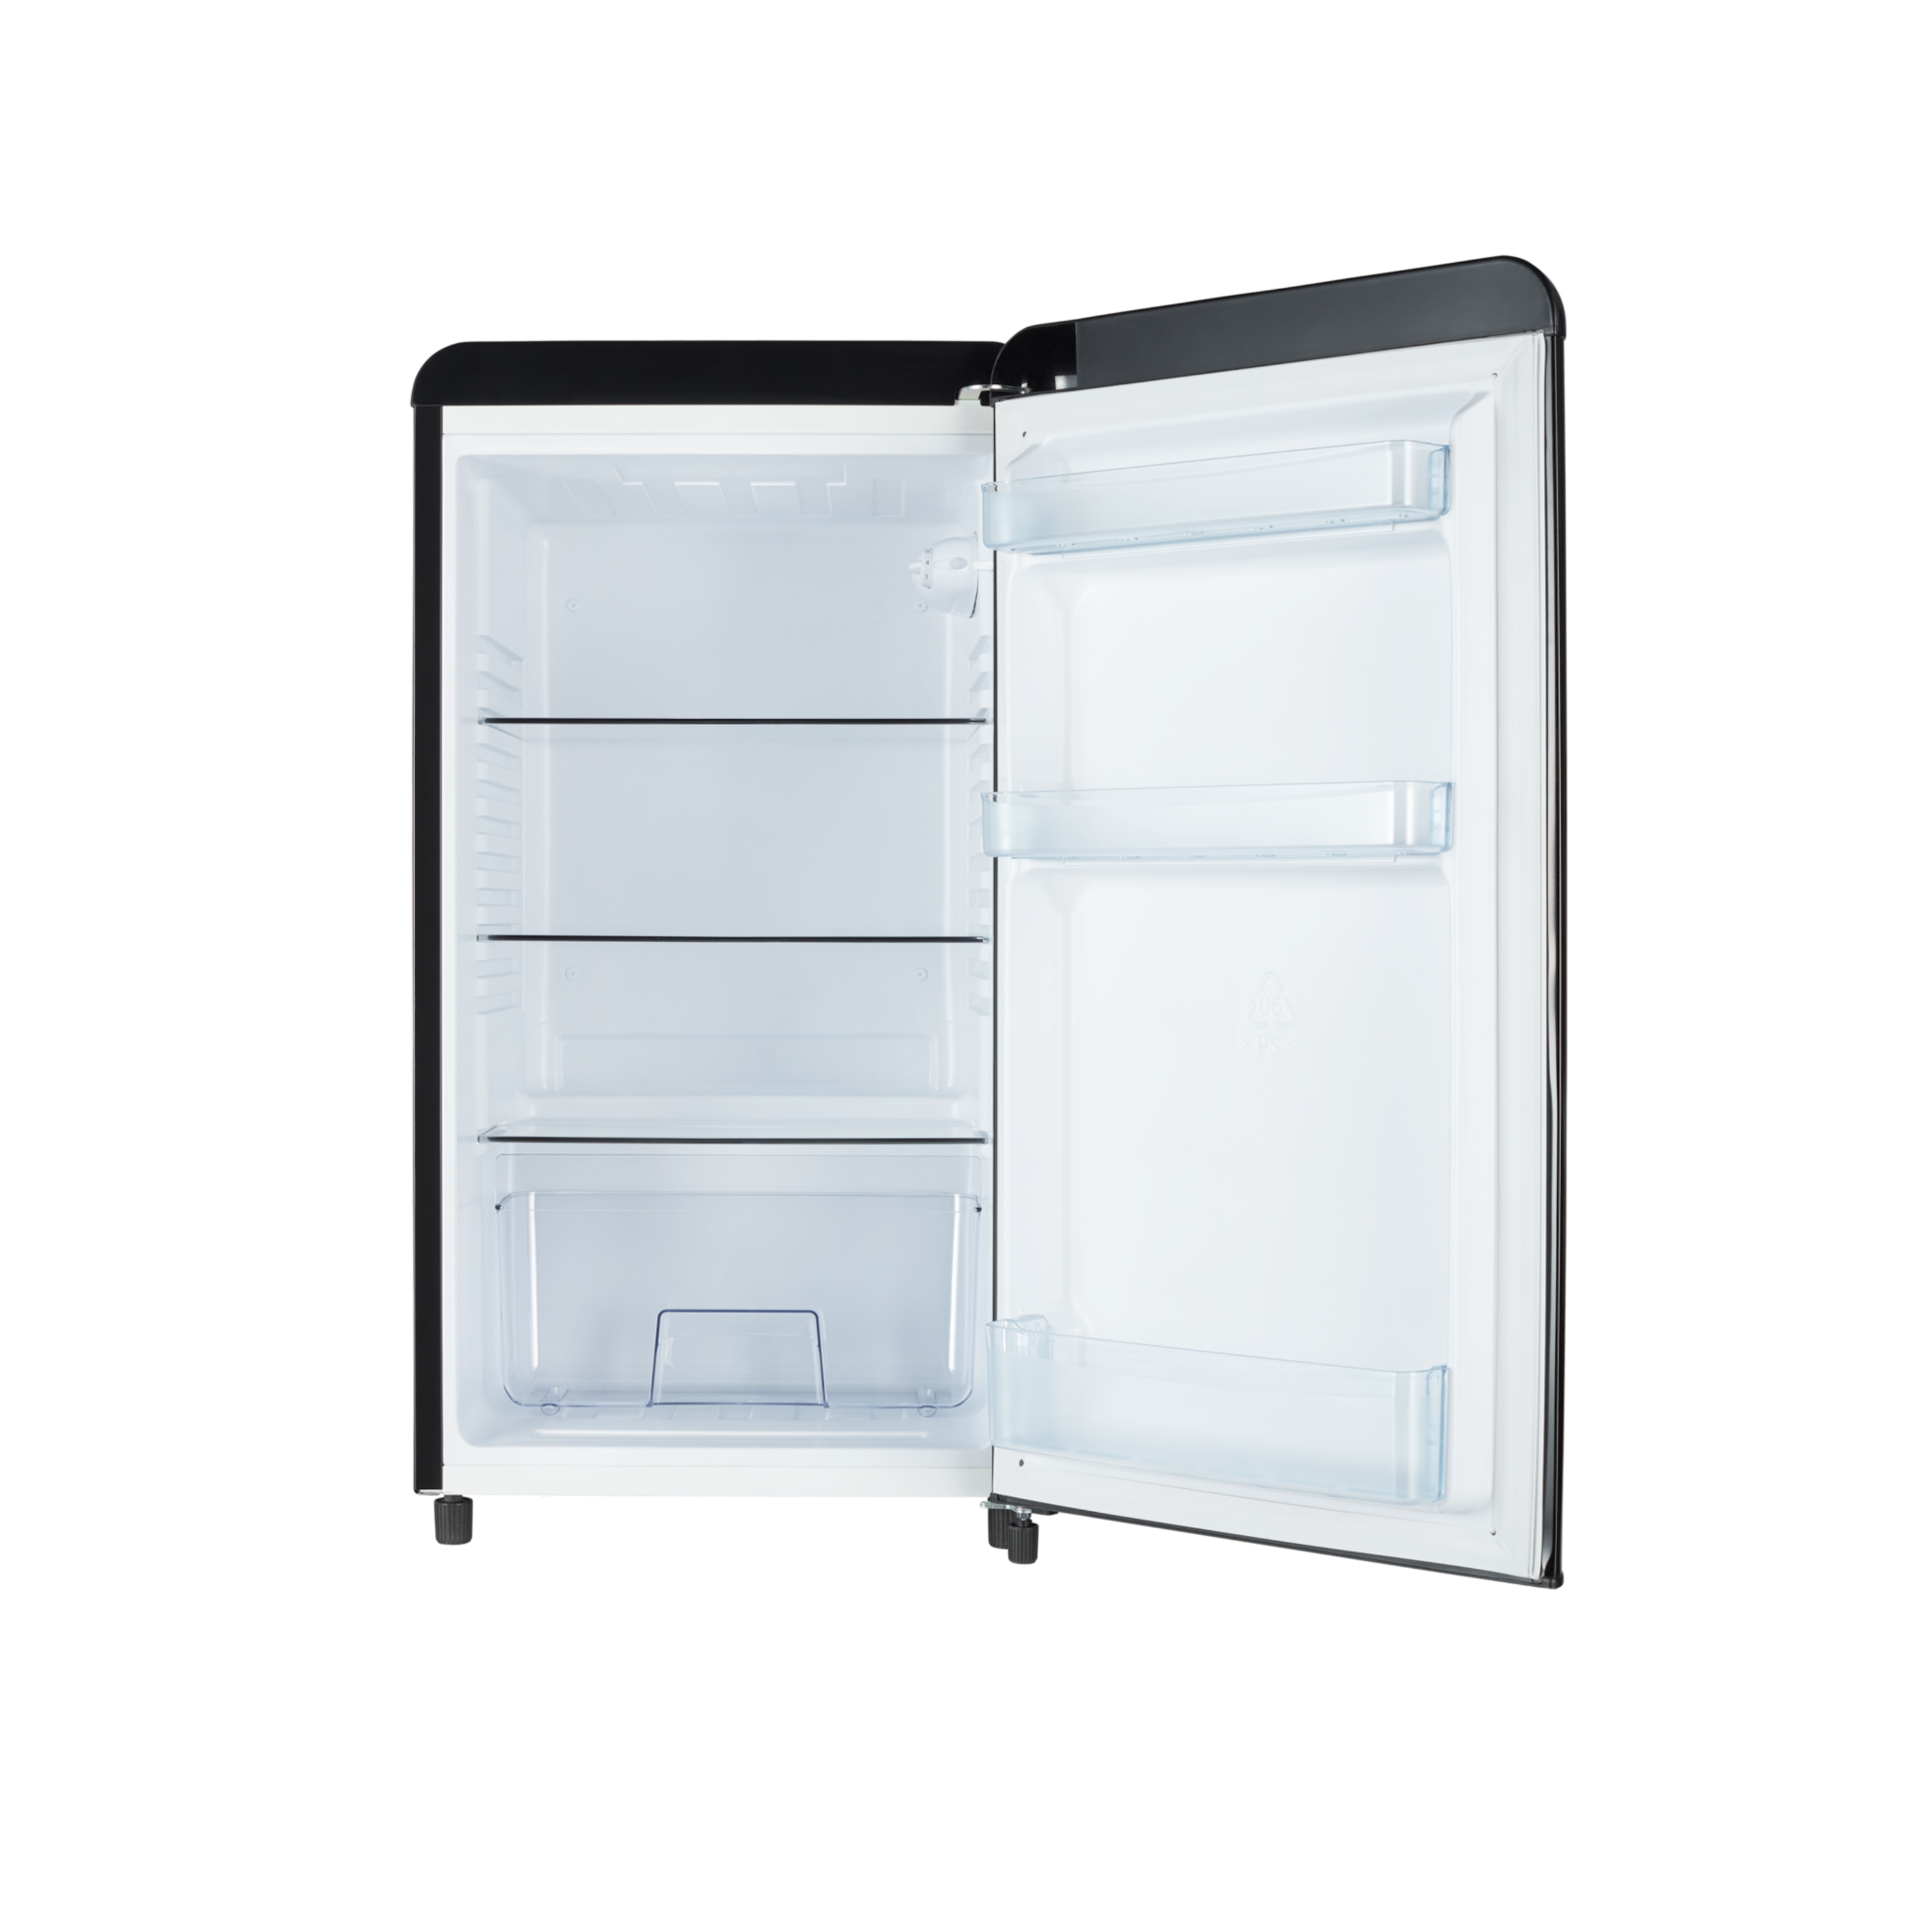 MEDION® Retro Kühlschrank MD 37293, 94 L Nutzinhalt, manuelle Temperaturkontrolle, höhenverstellbare Füße, stylishes Design